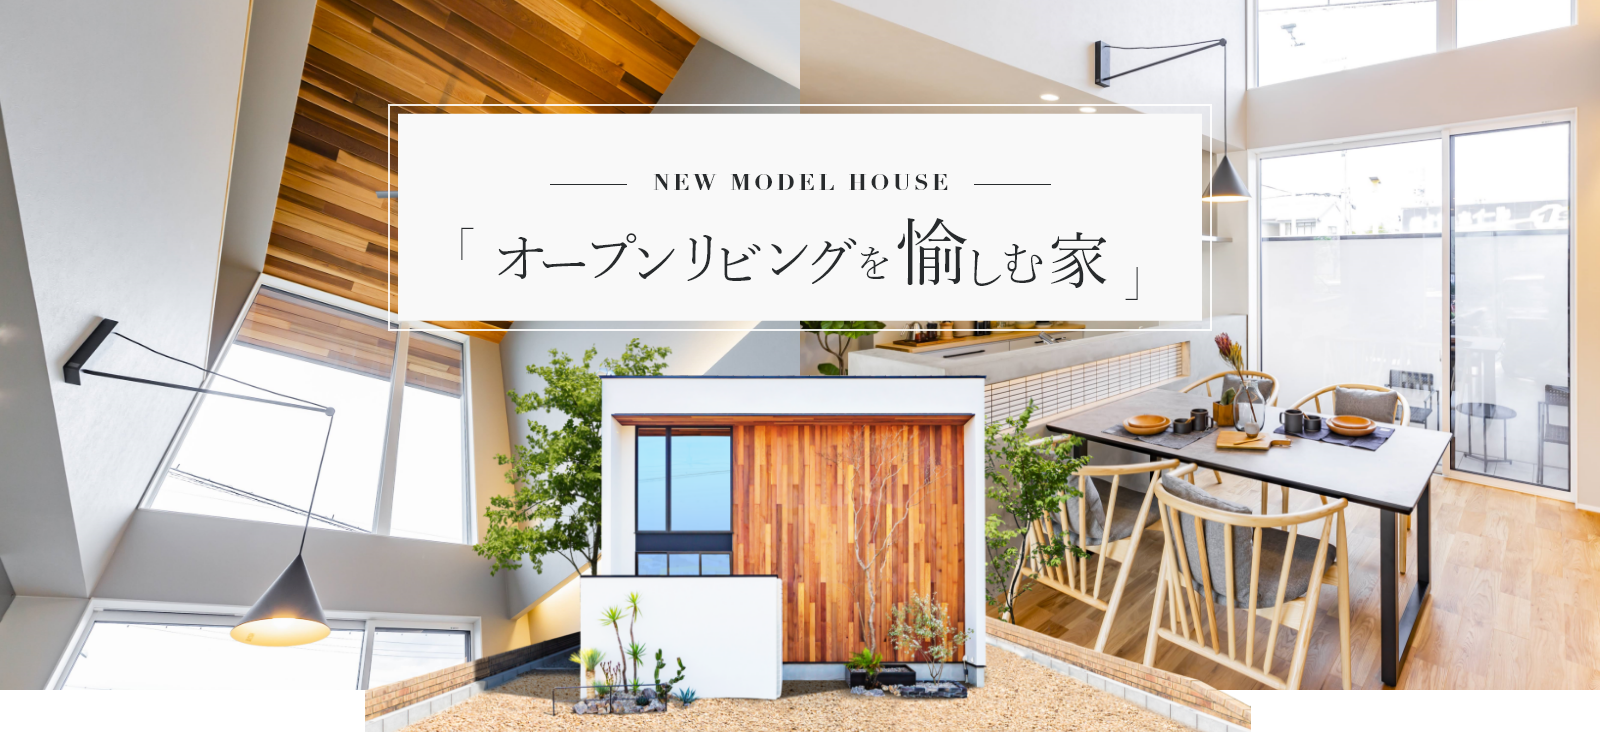 - NEW MODEL HOUSE - オープンリビングを愉しむ家